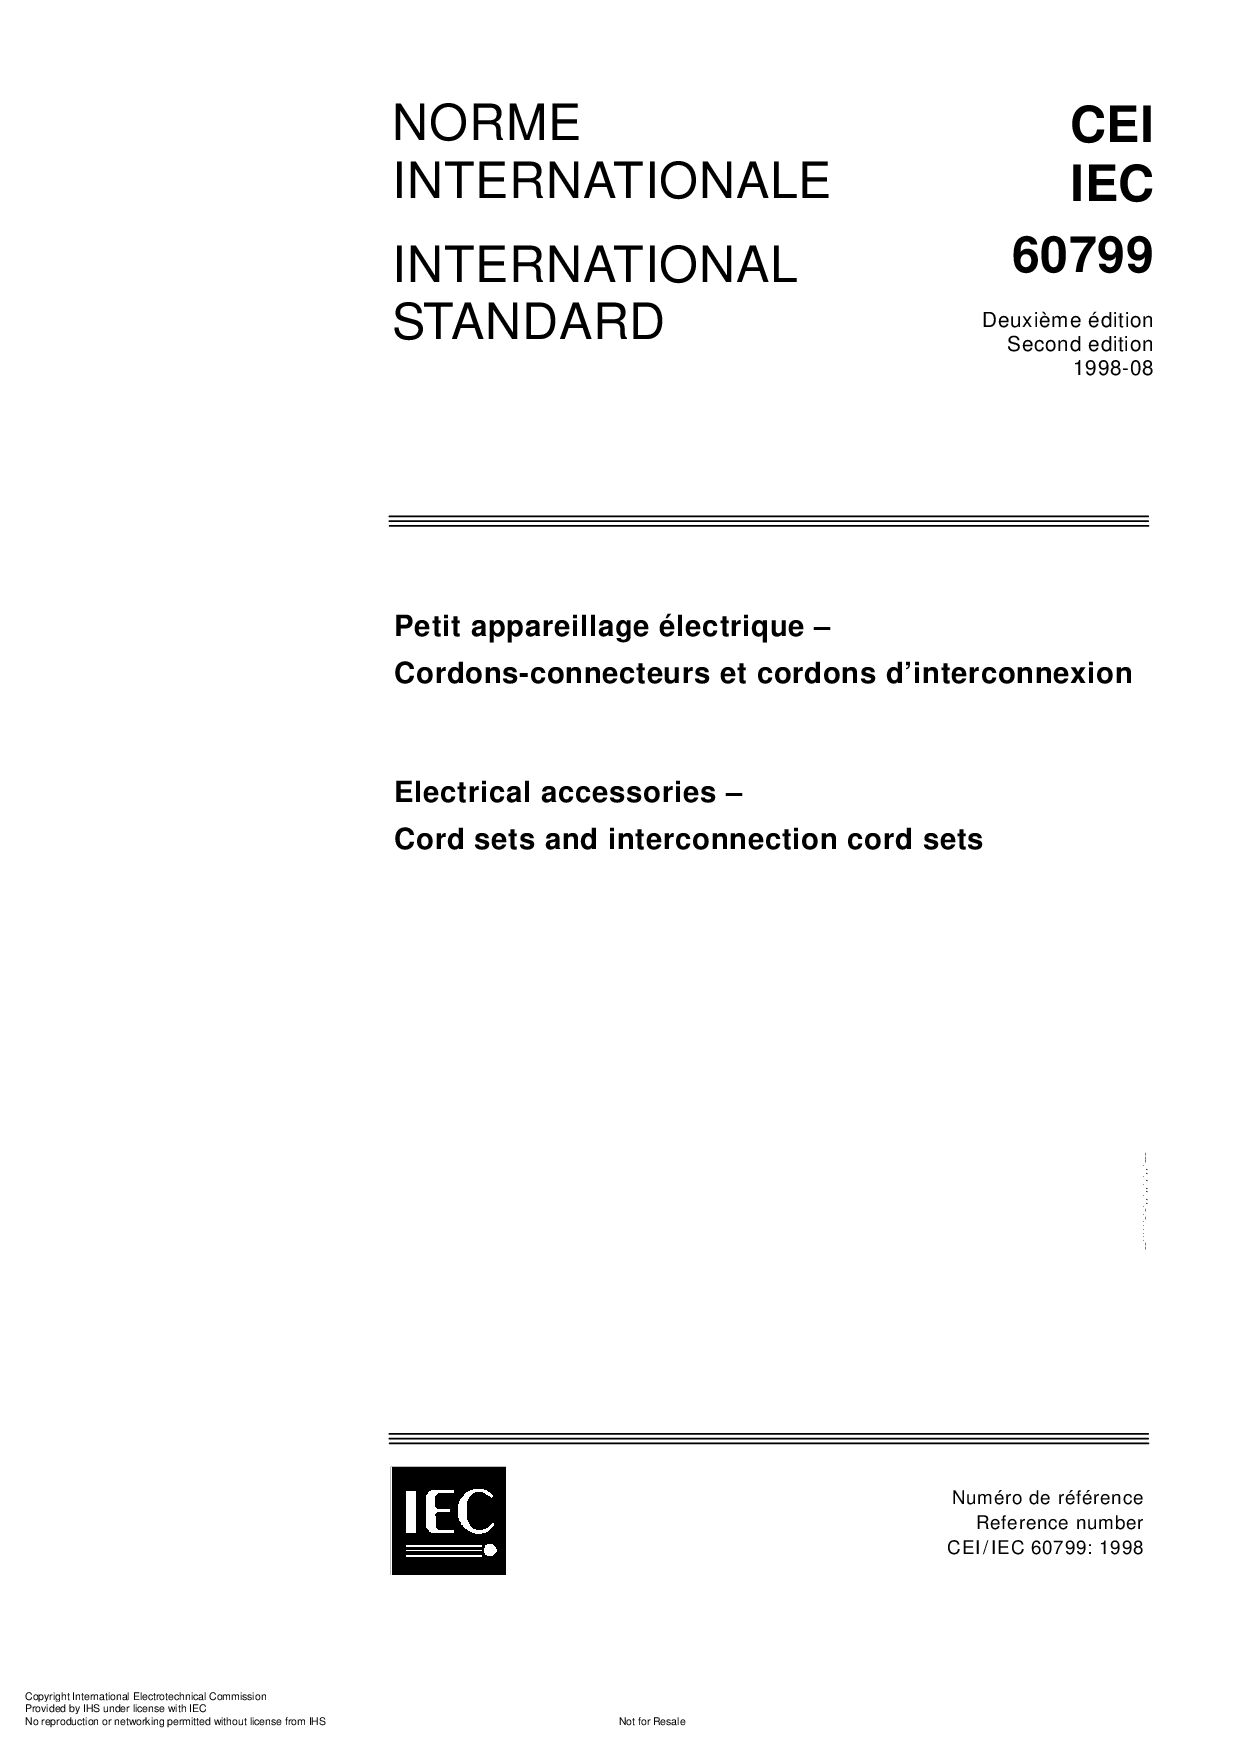 IEC 60799-1998